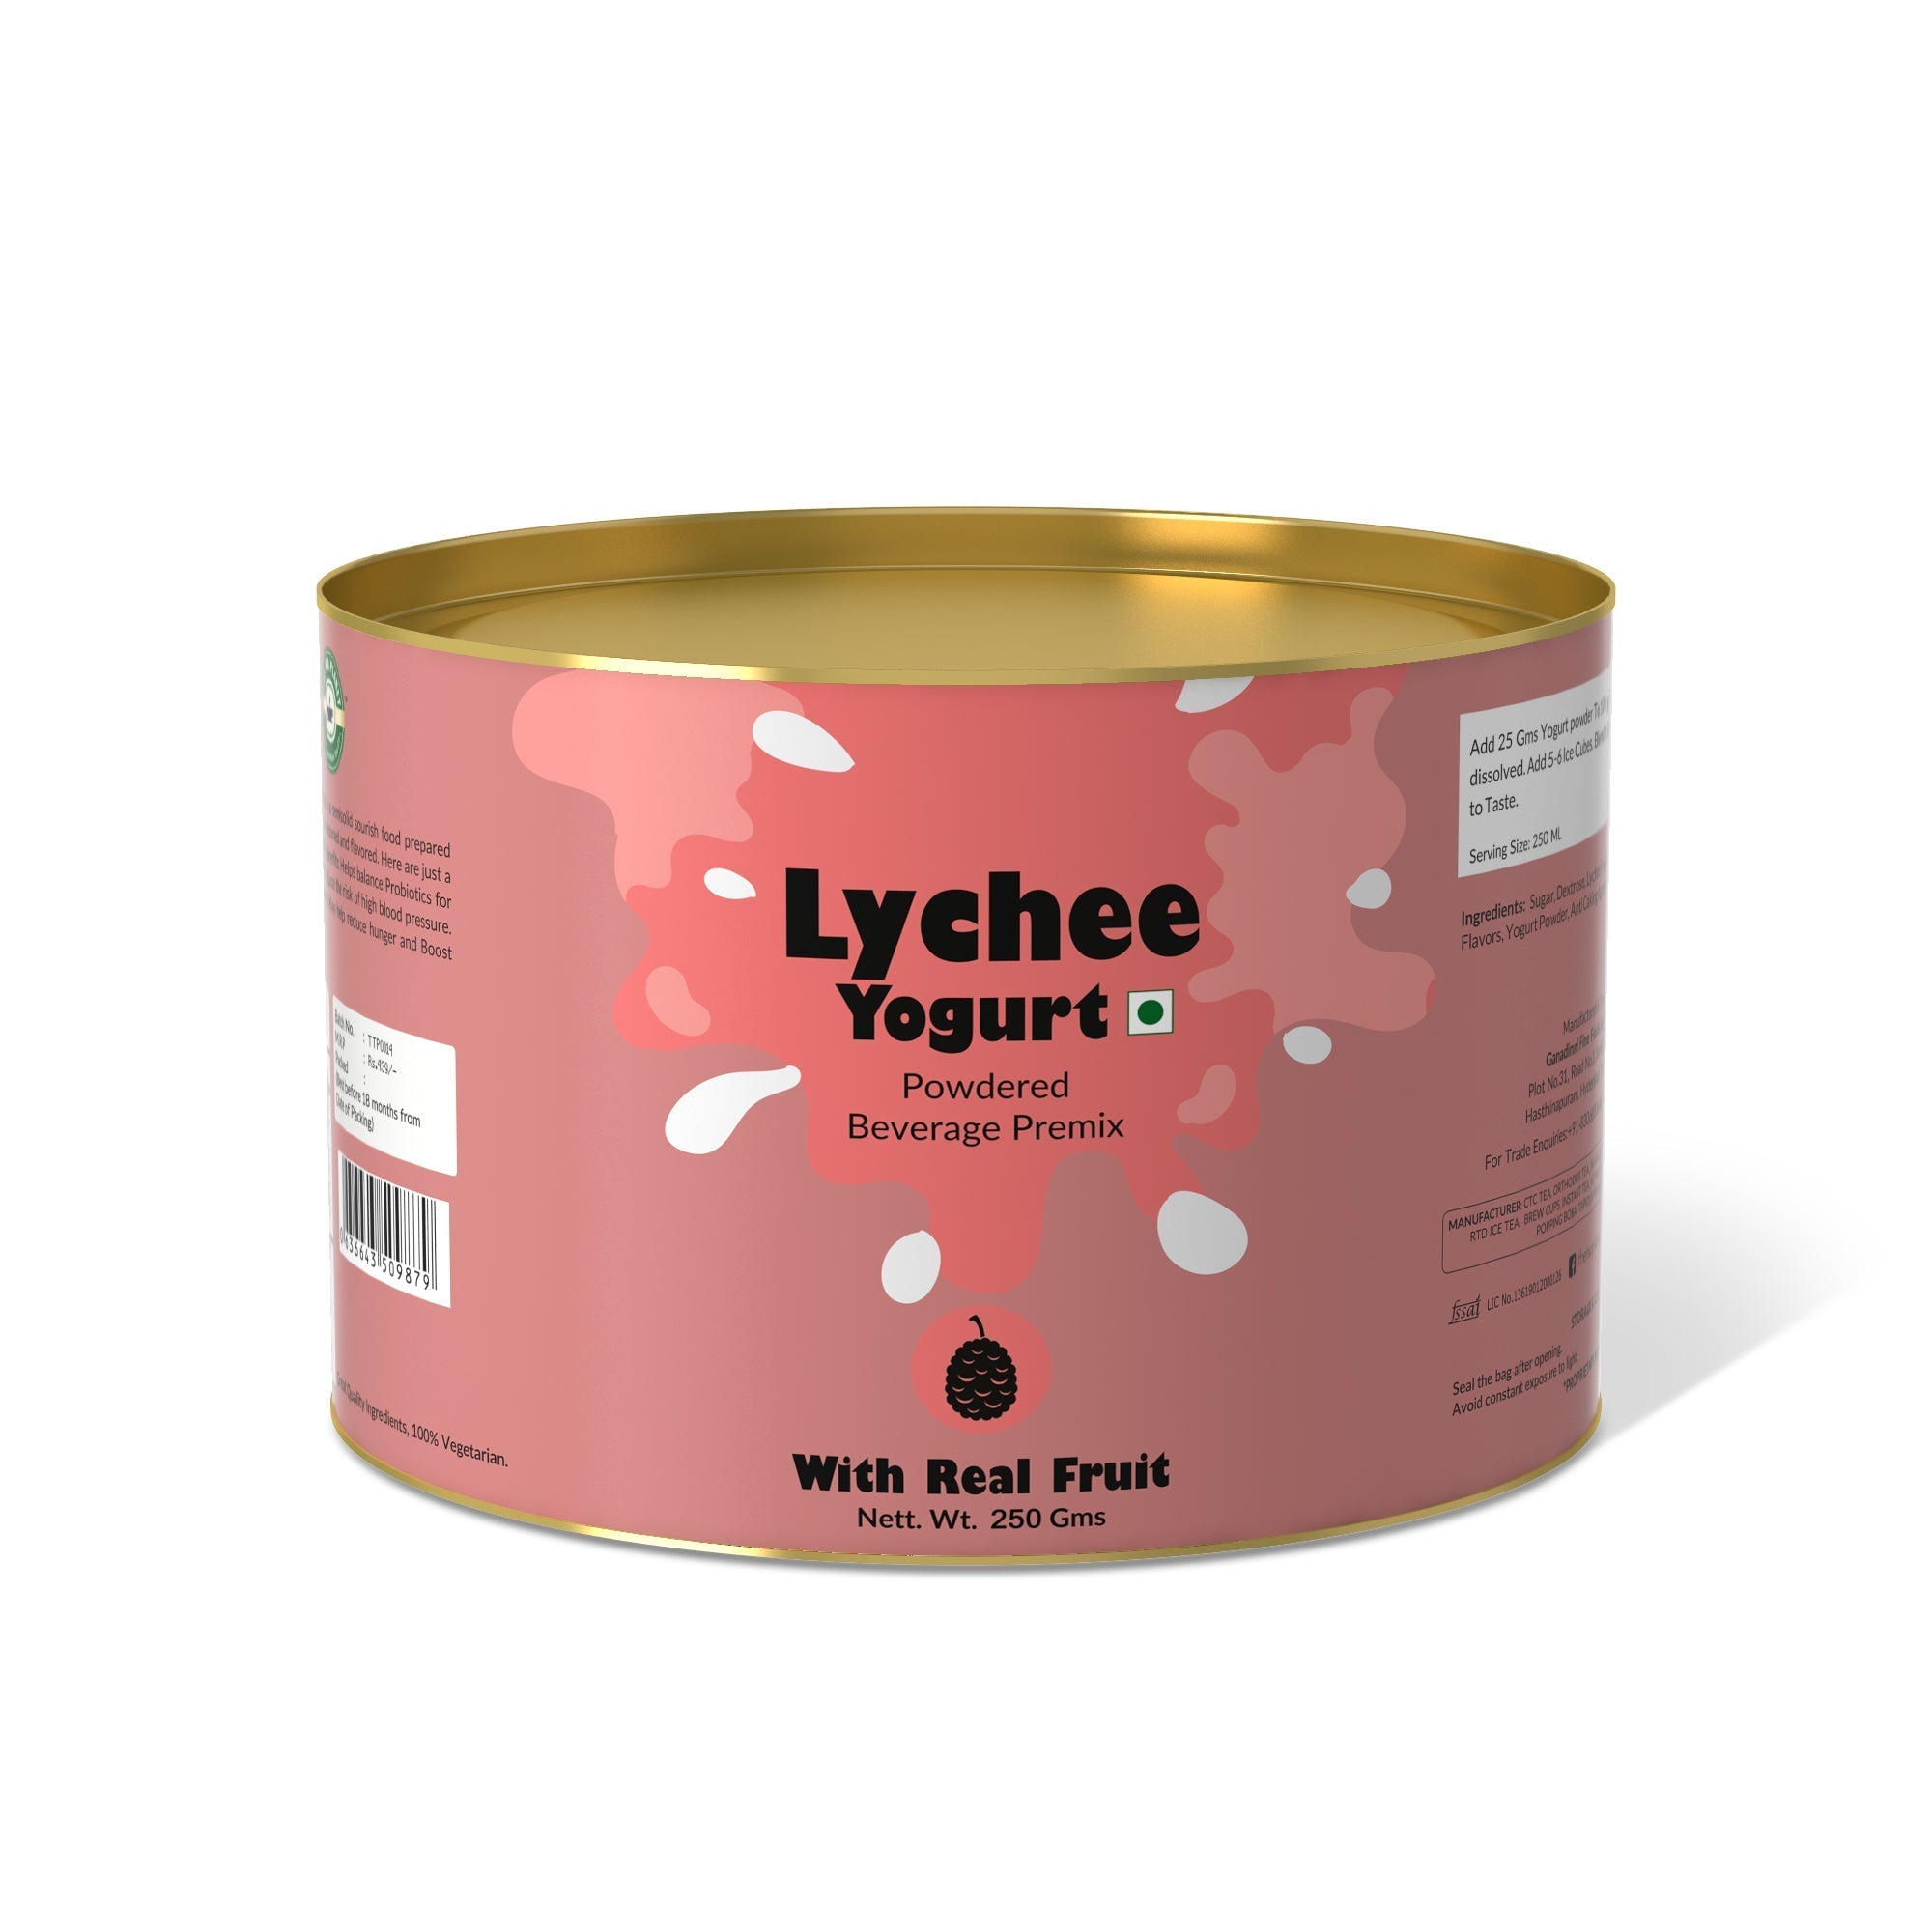 Lychee Yogurt Mix - 800 gms